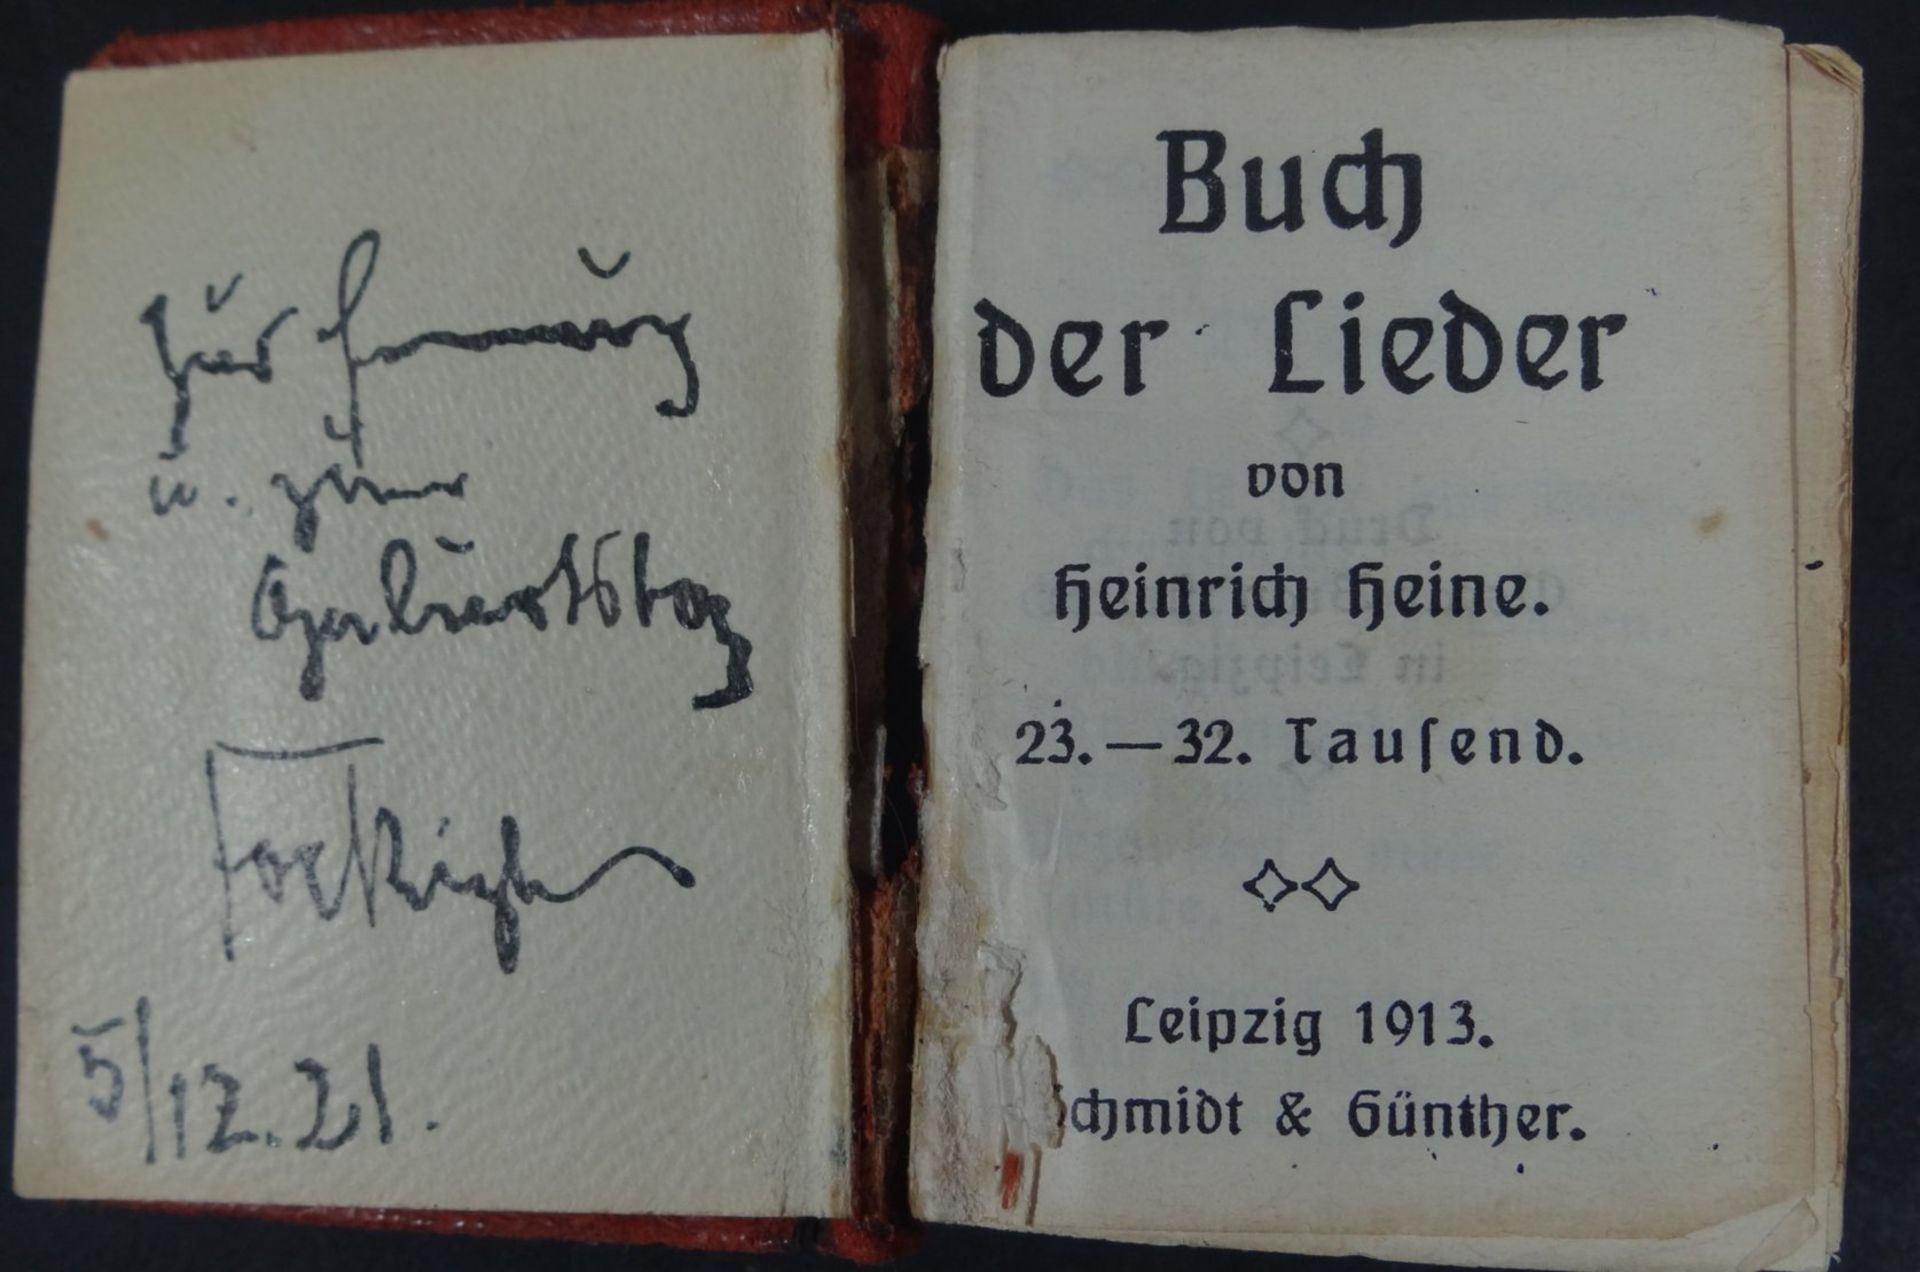 Miniatur-Büchlein, H.Heine "Das Buch der Lieder" 1913, Einband beschädigt, Alters-u. - Bild 3 aus 5